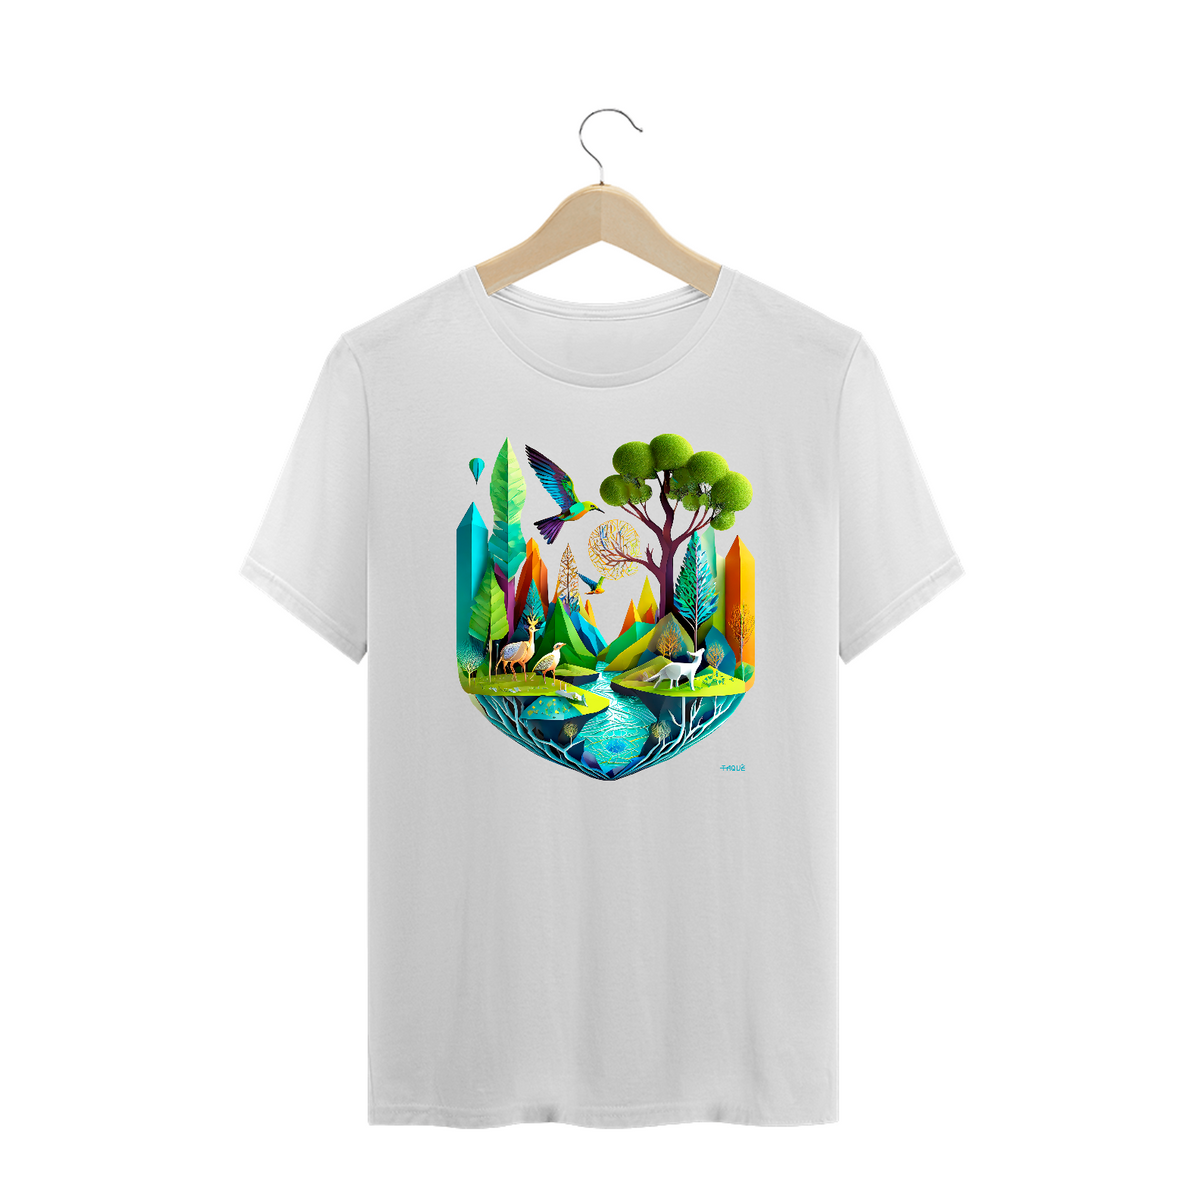 Nome do produto: Camiseta Plus Size Polígonos - Ecossistema